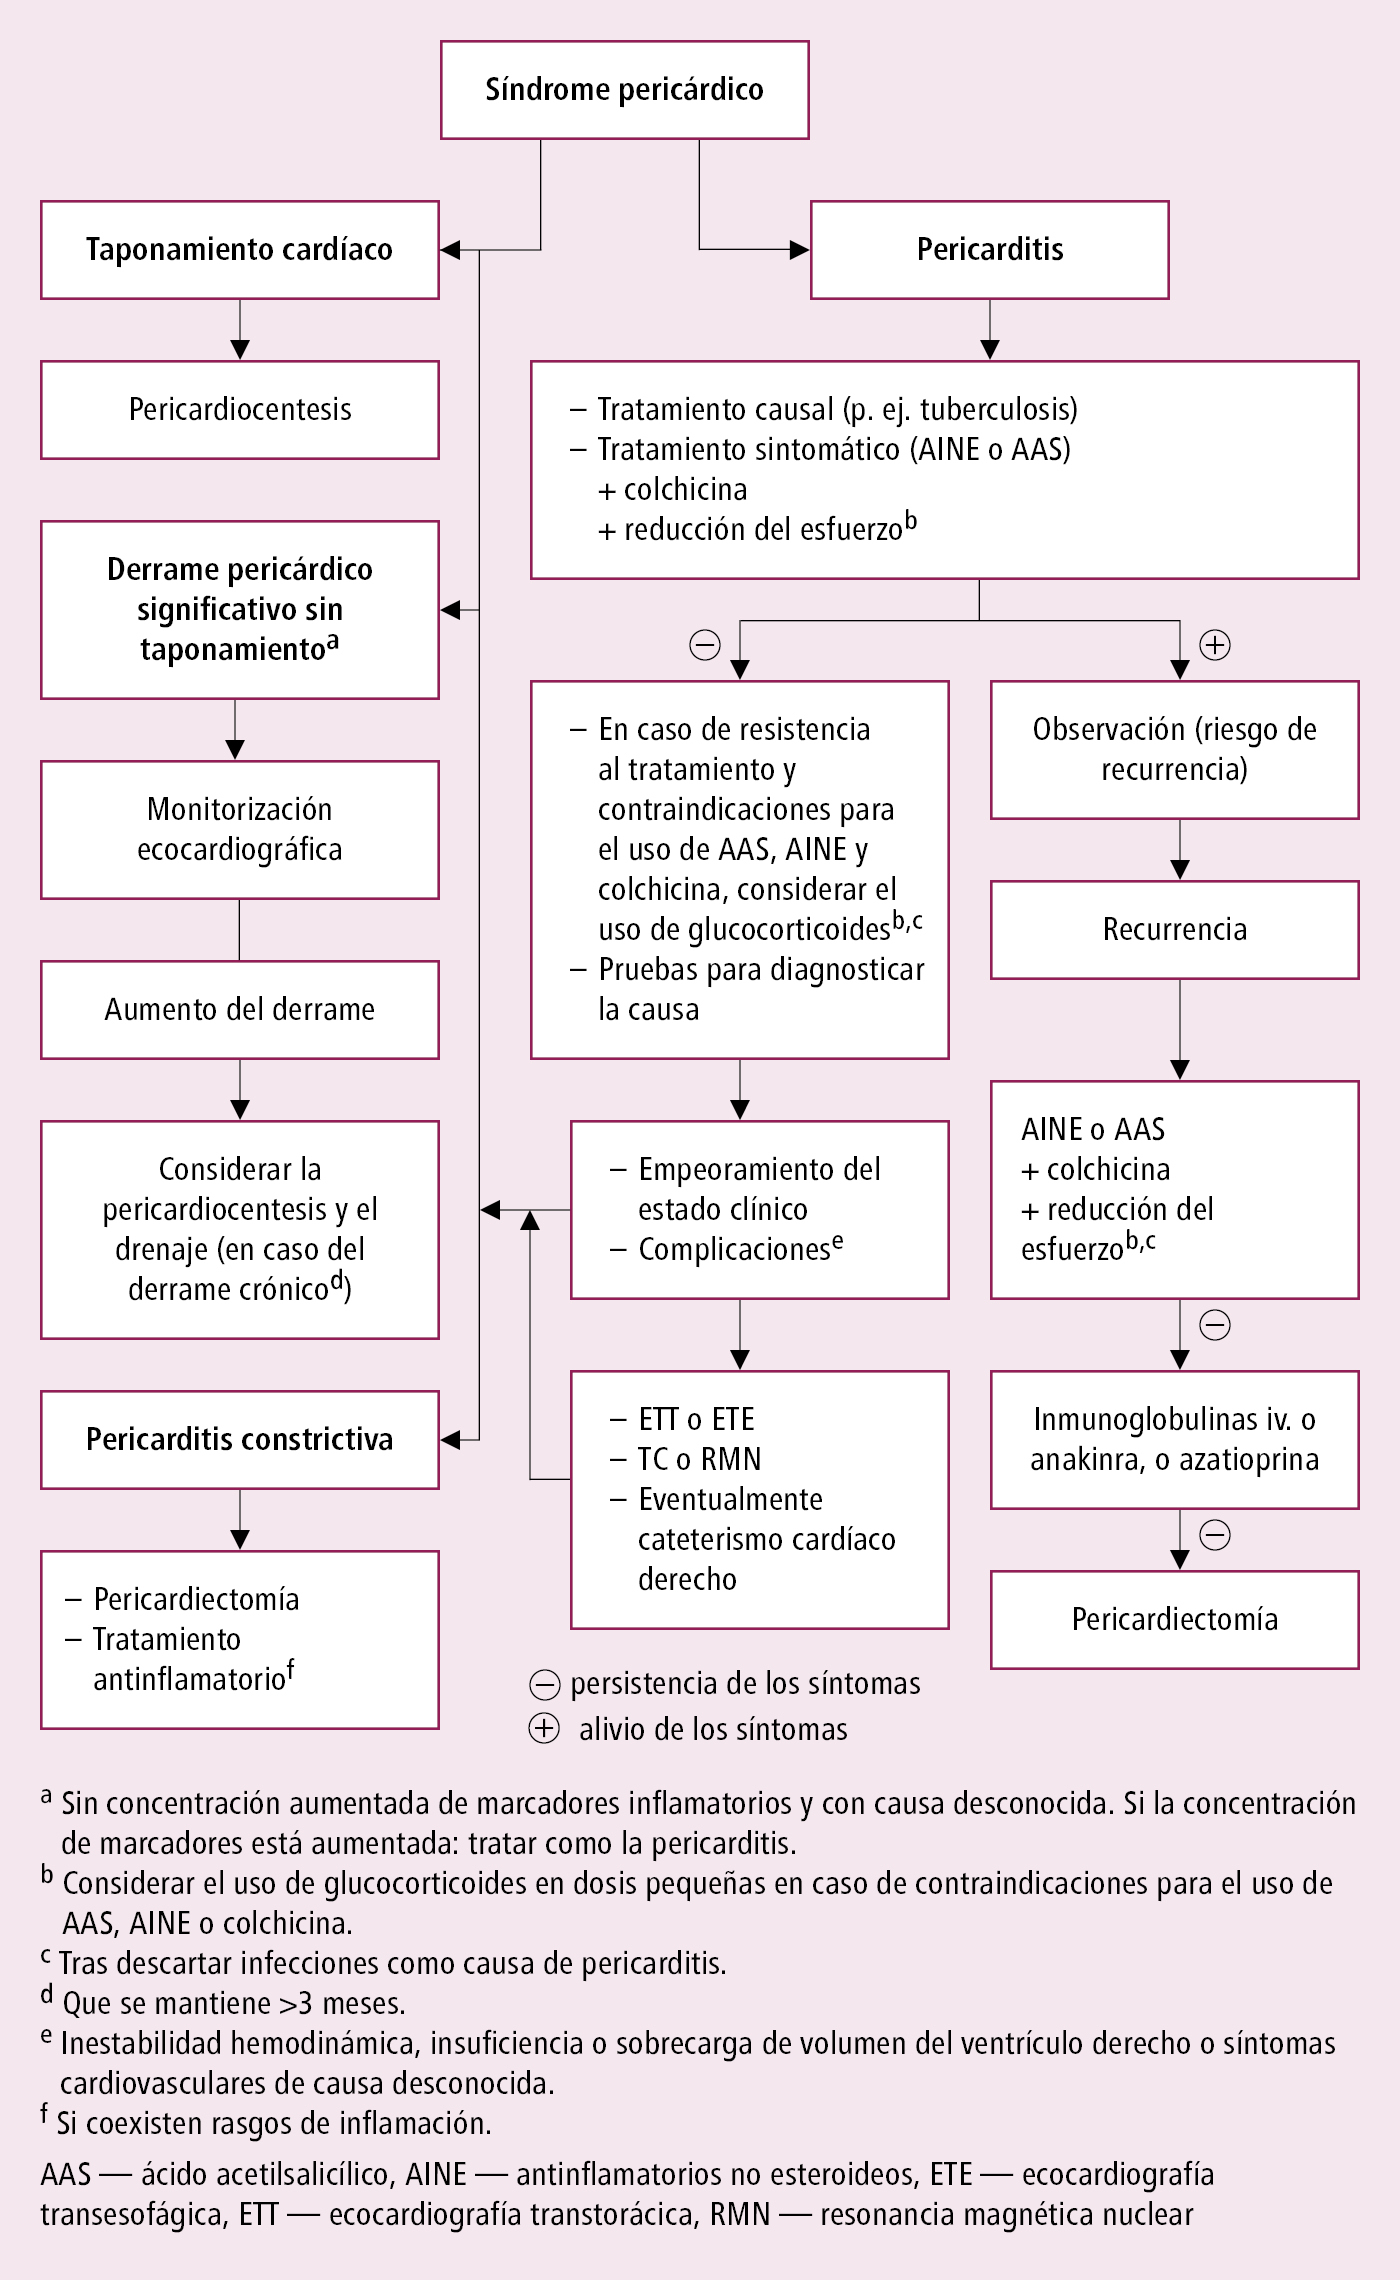    Fig. 2.17-1.  Algoritmo de tratamiento de la pericarditis (según las guías de la ESC 2015, modificado)  